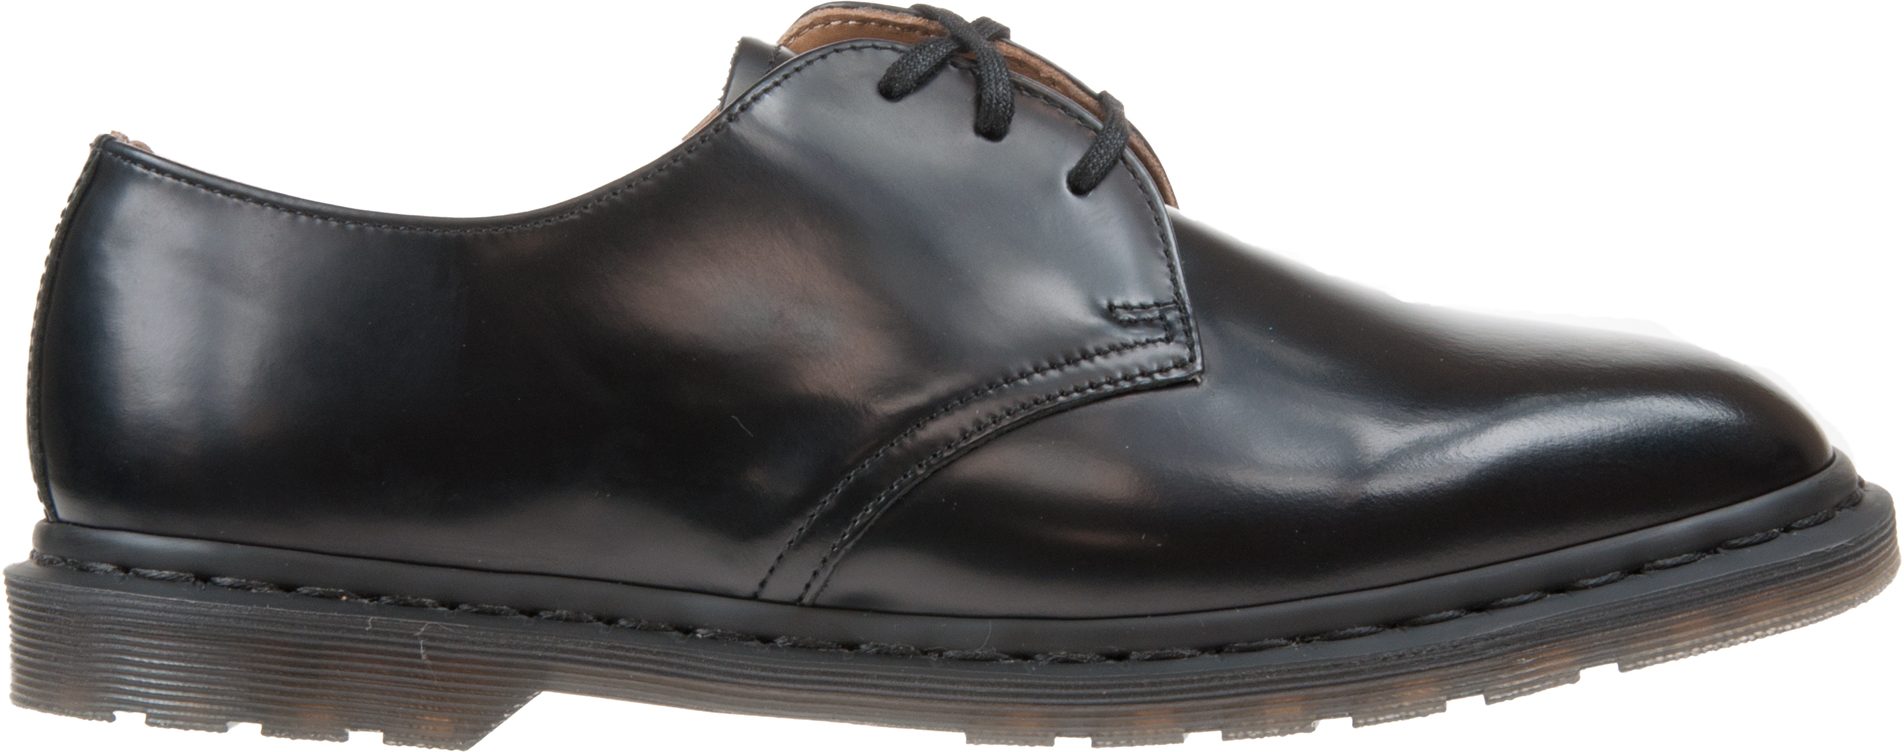 Dr. Martens Archie II Black Polished Smooth 25009001 - Formal Shoes ...